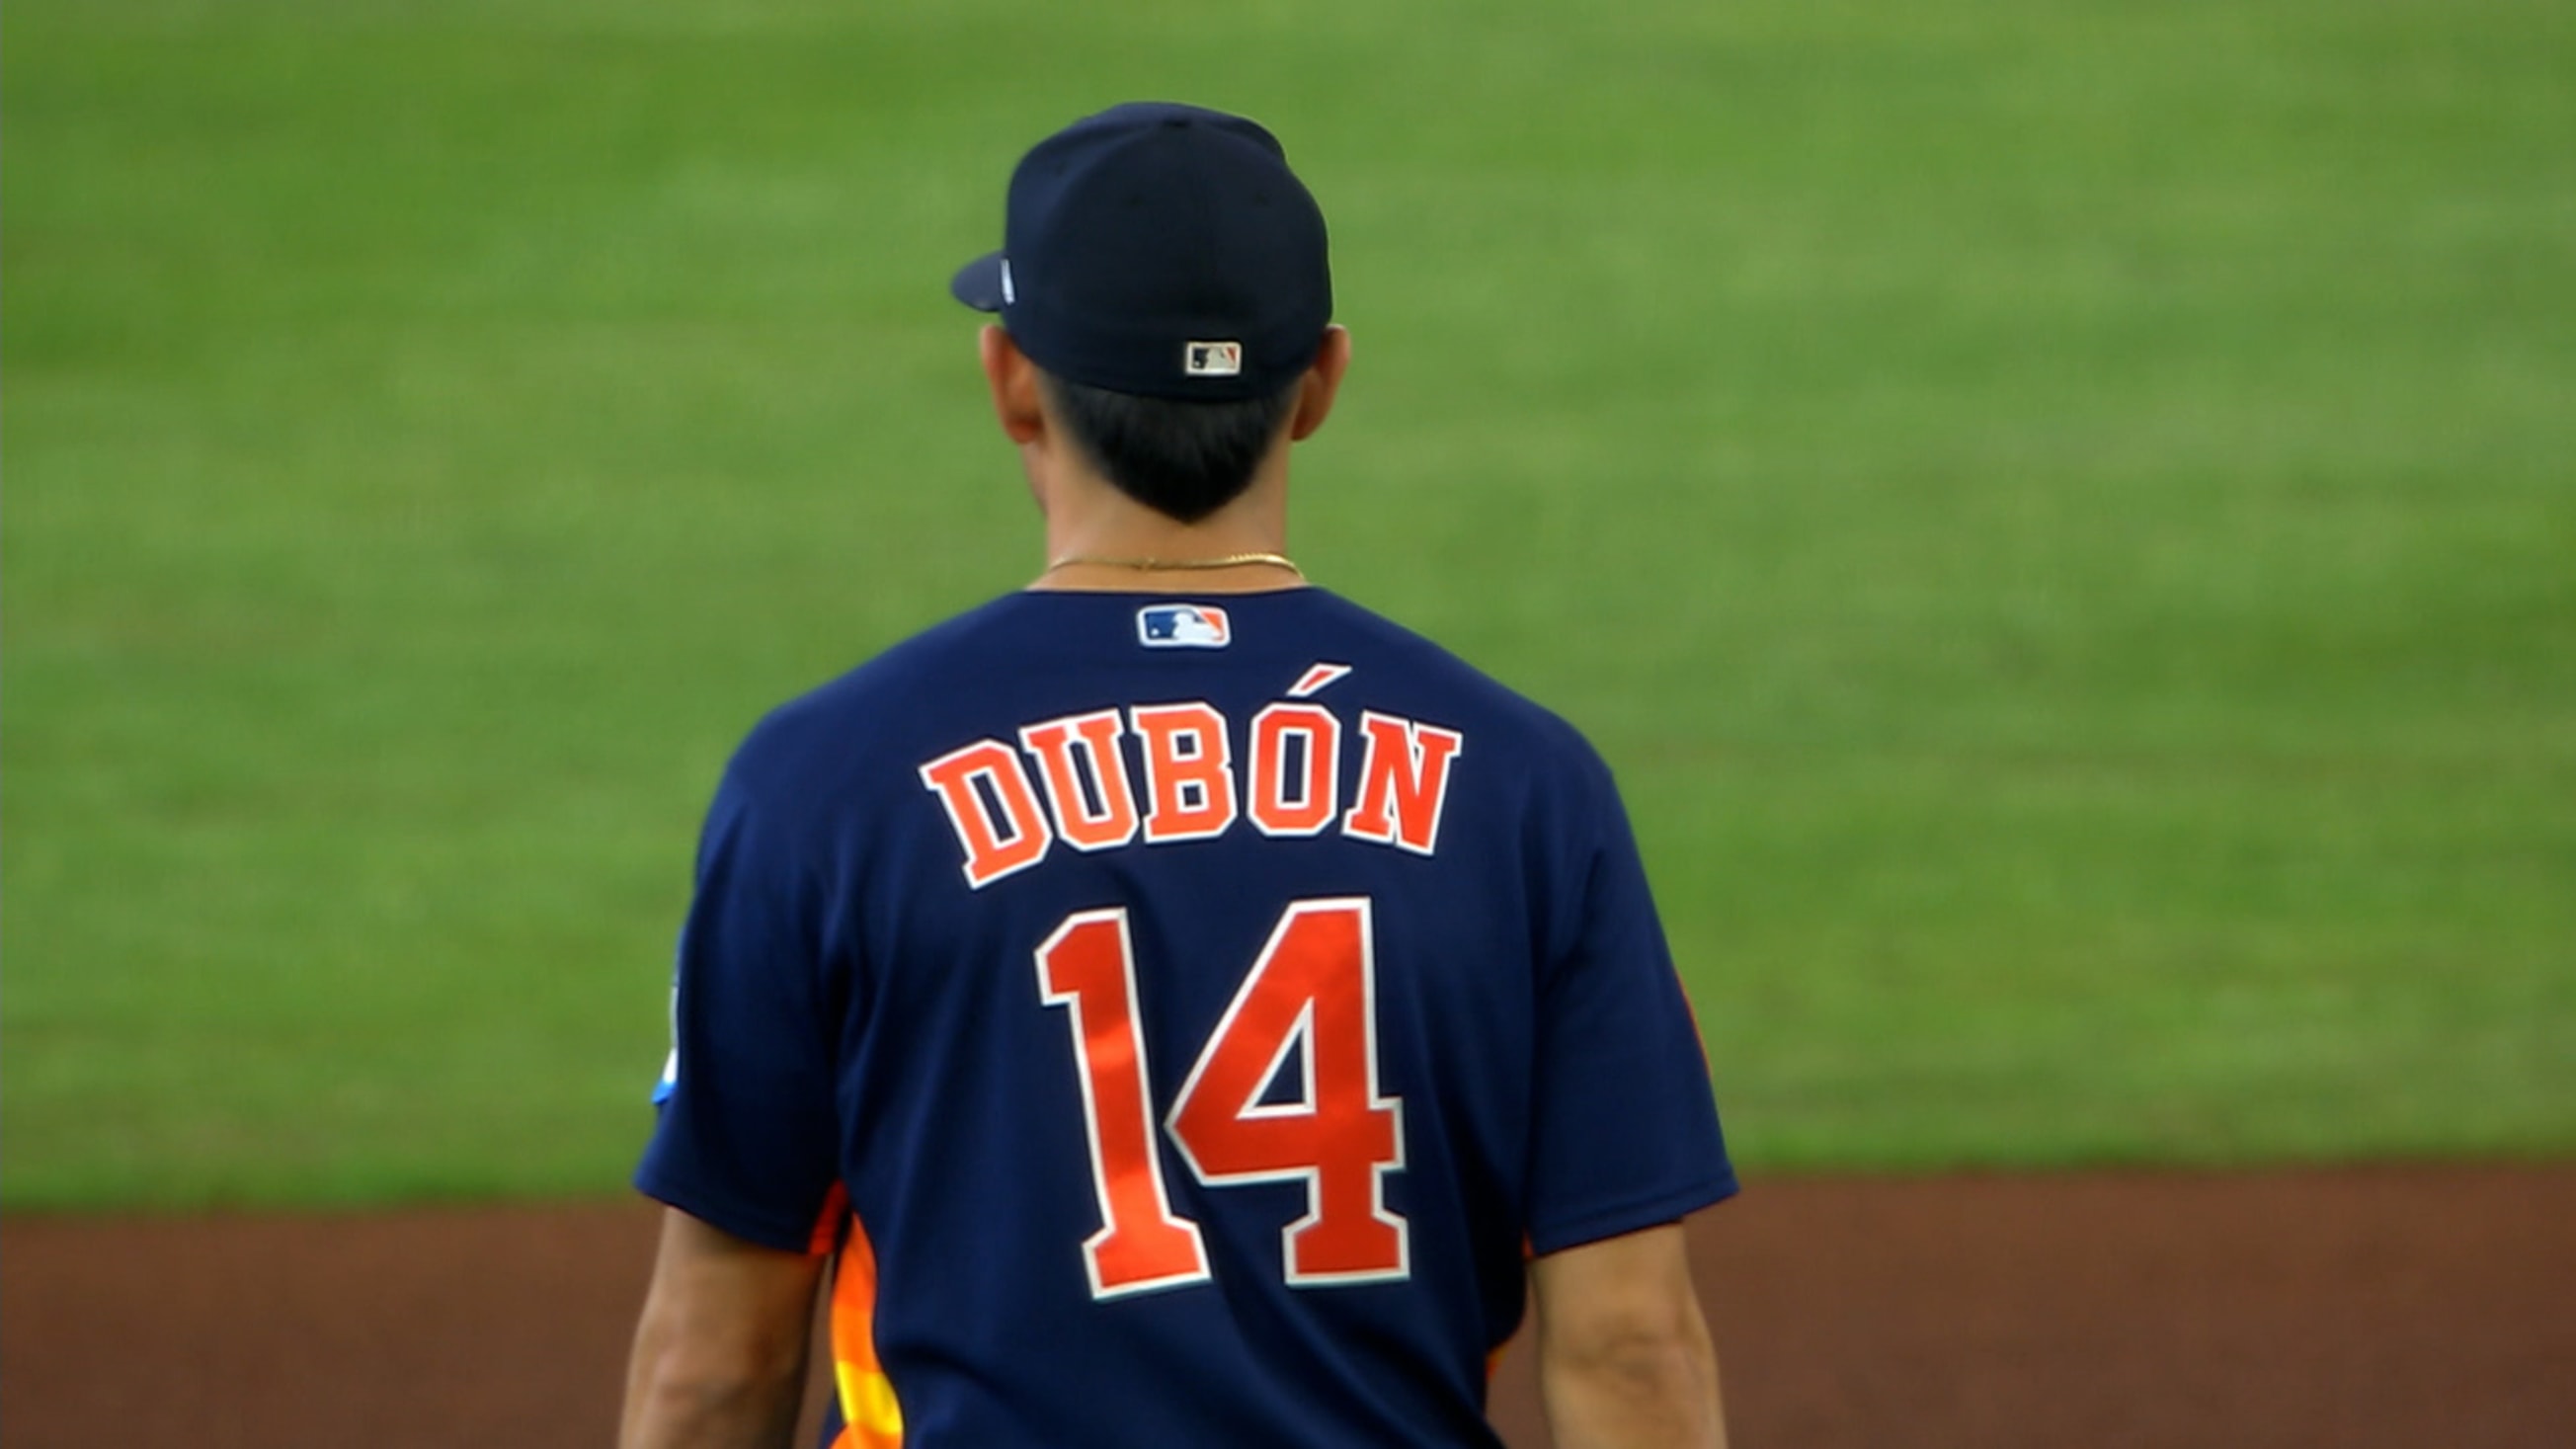 Mauricio Dubon - Salary History - The Baseball Cube